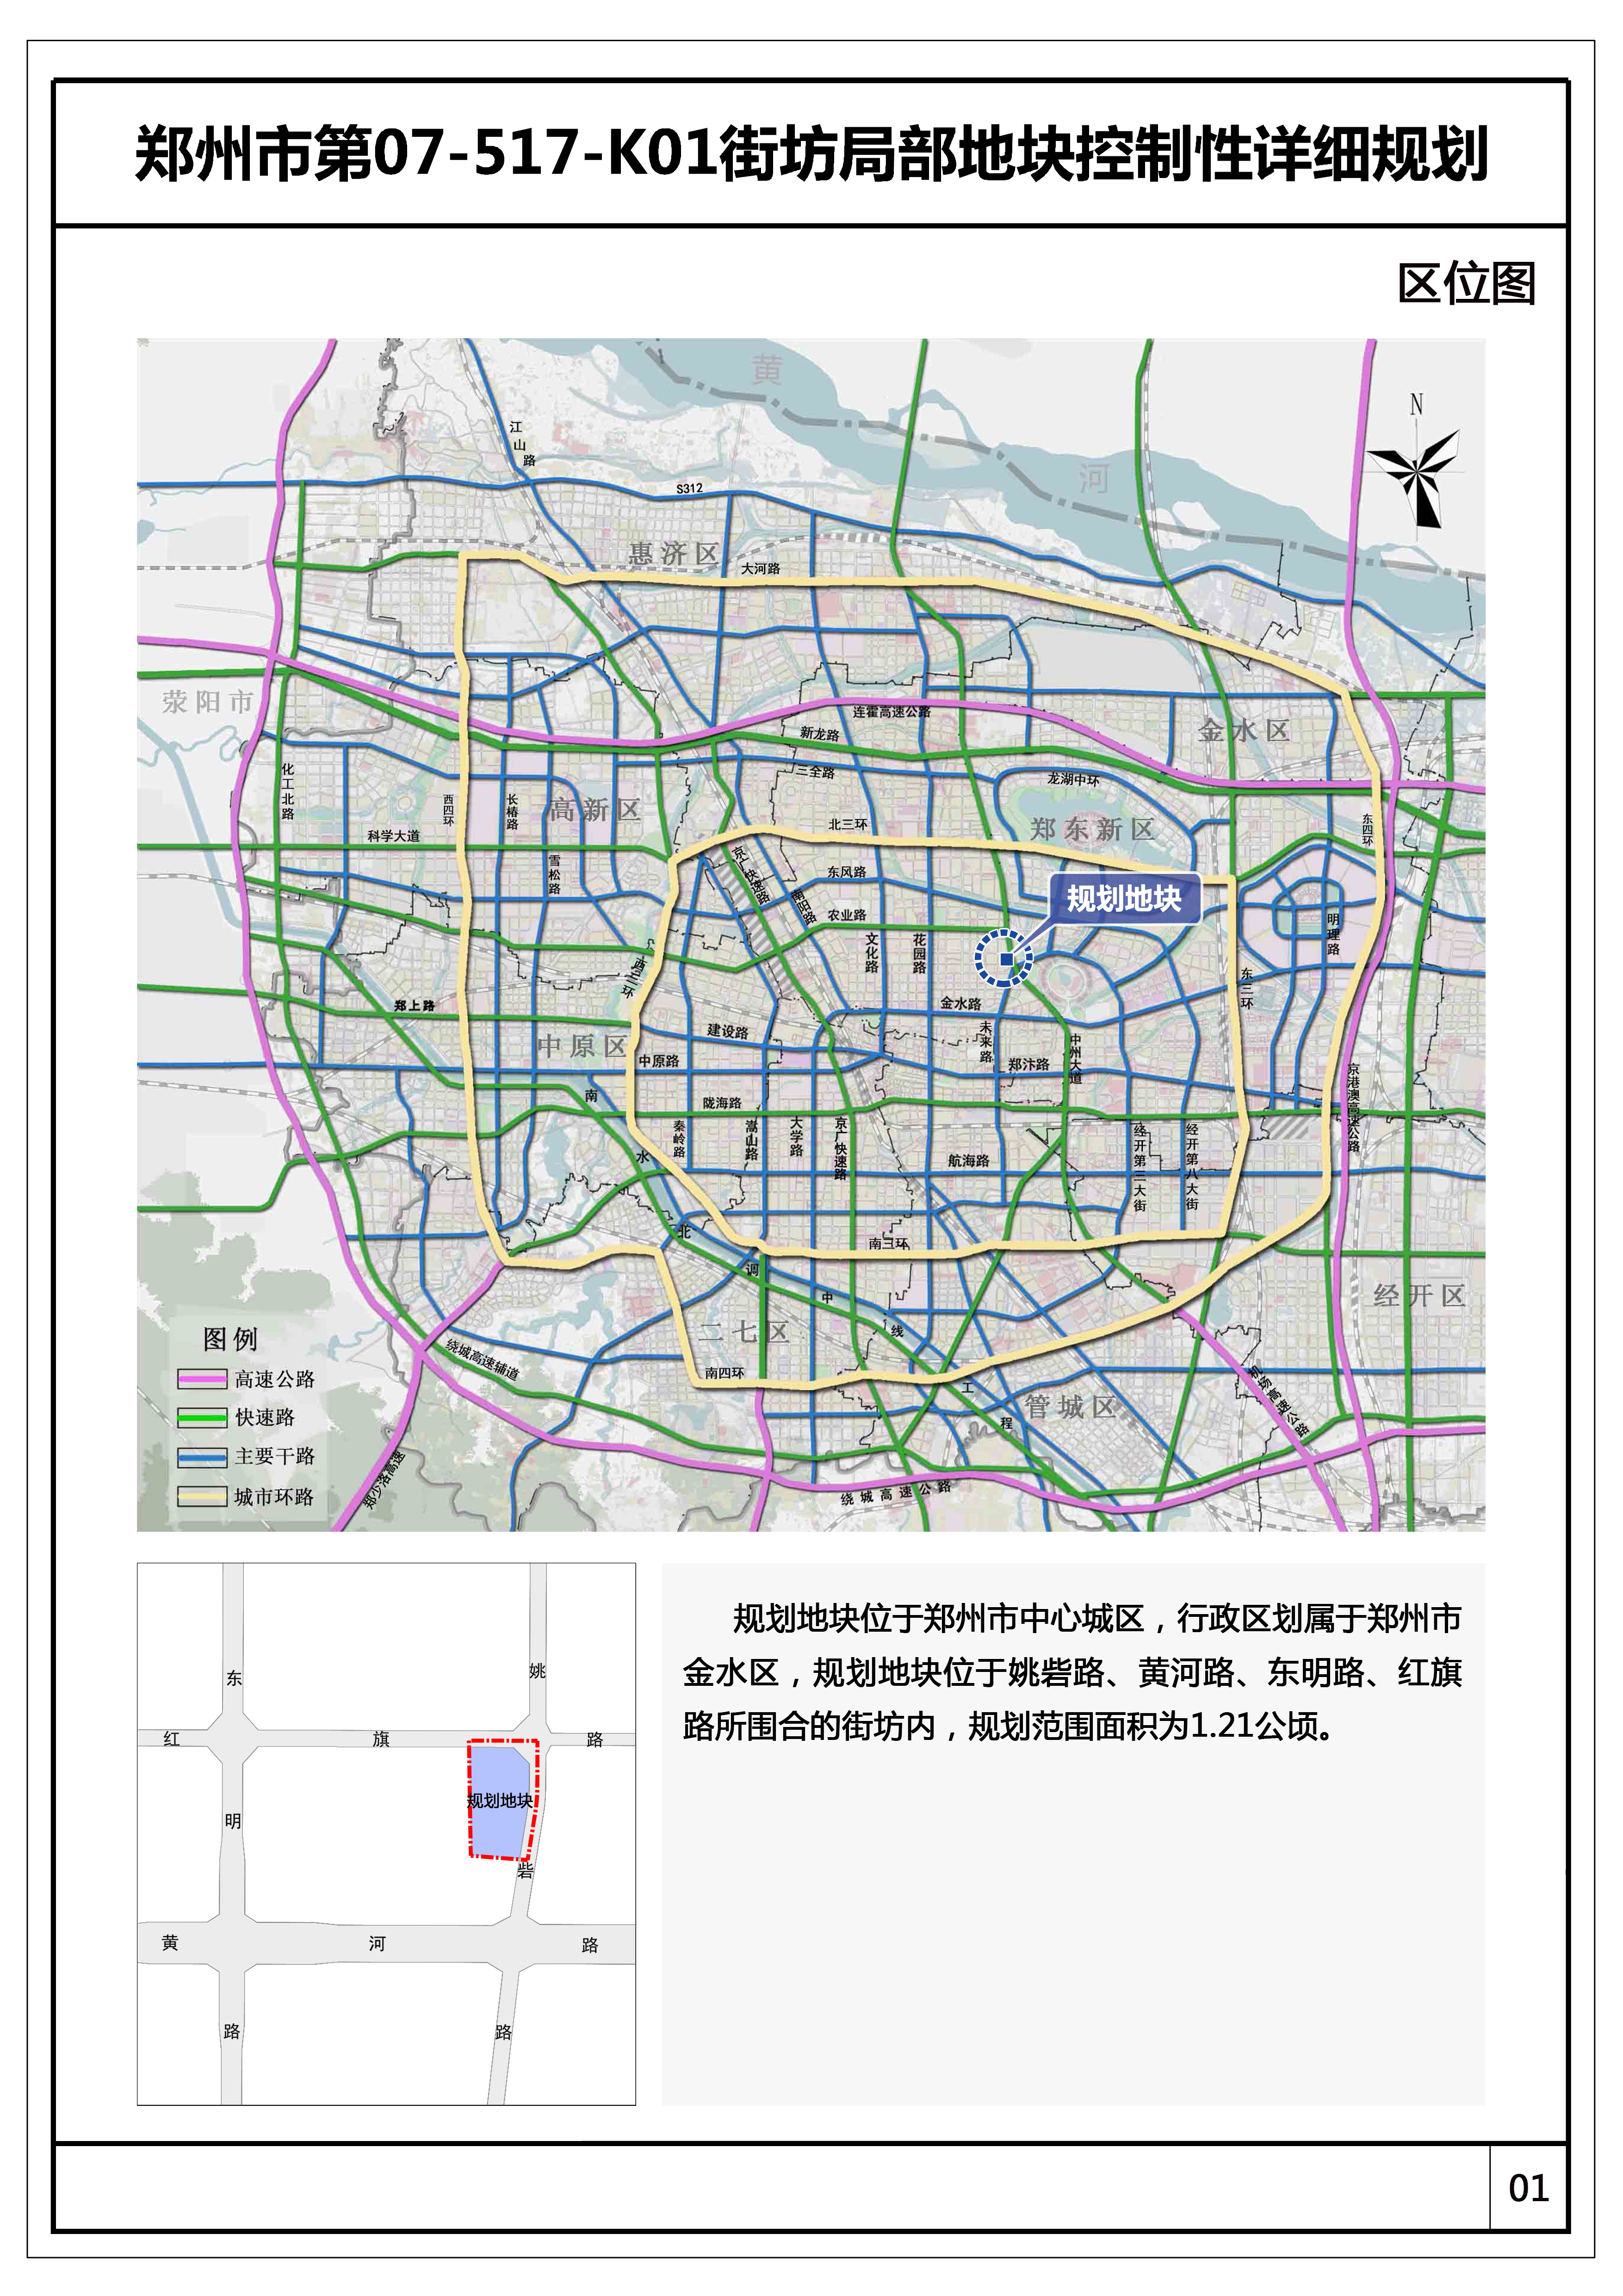 郑州市第07-517-K01街坊局部地块控制性详细规划